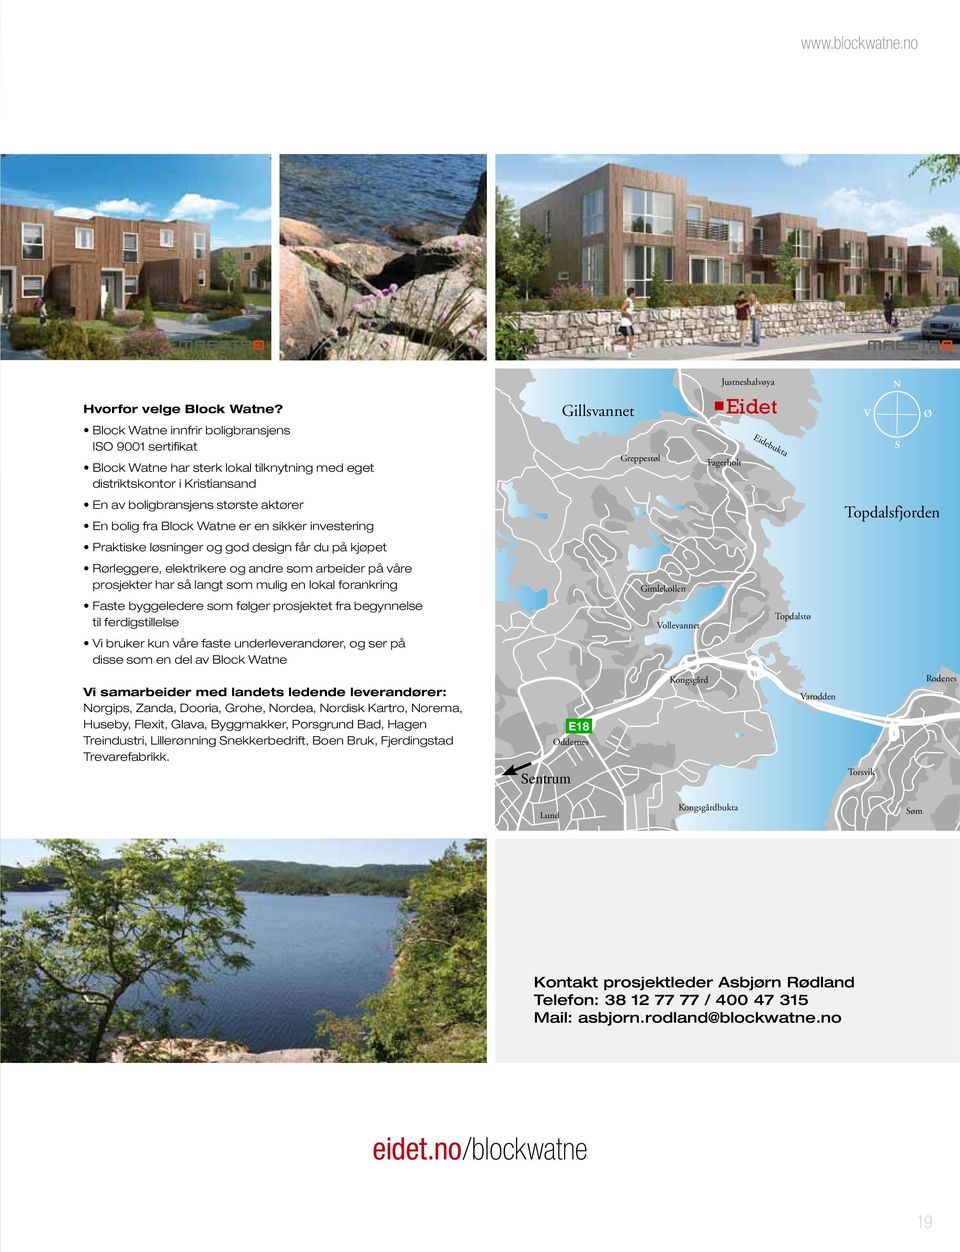 En av boligbransjens største aktører En bolig fra Block Watne er en sikker investering Topdalsfjorden Praktiske løsninger og god design får du på kjøpet Rørleggere, elektrikere og andre som arbeider